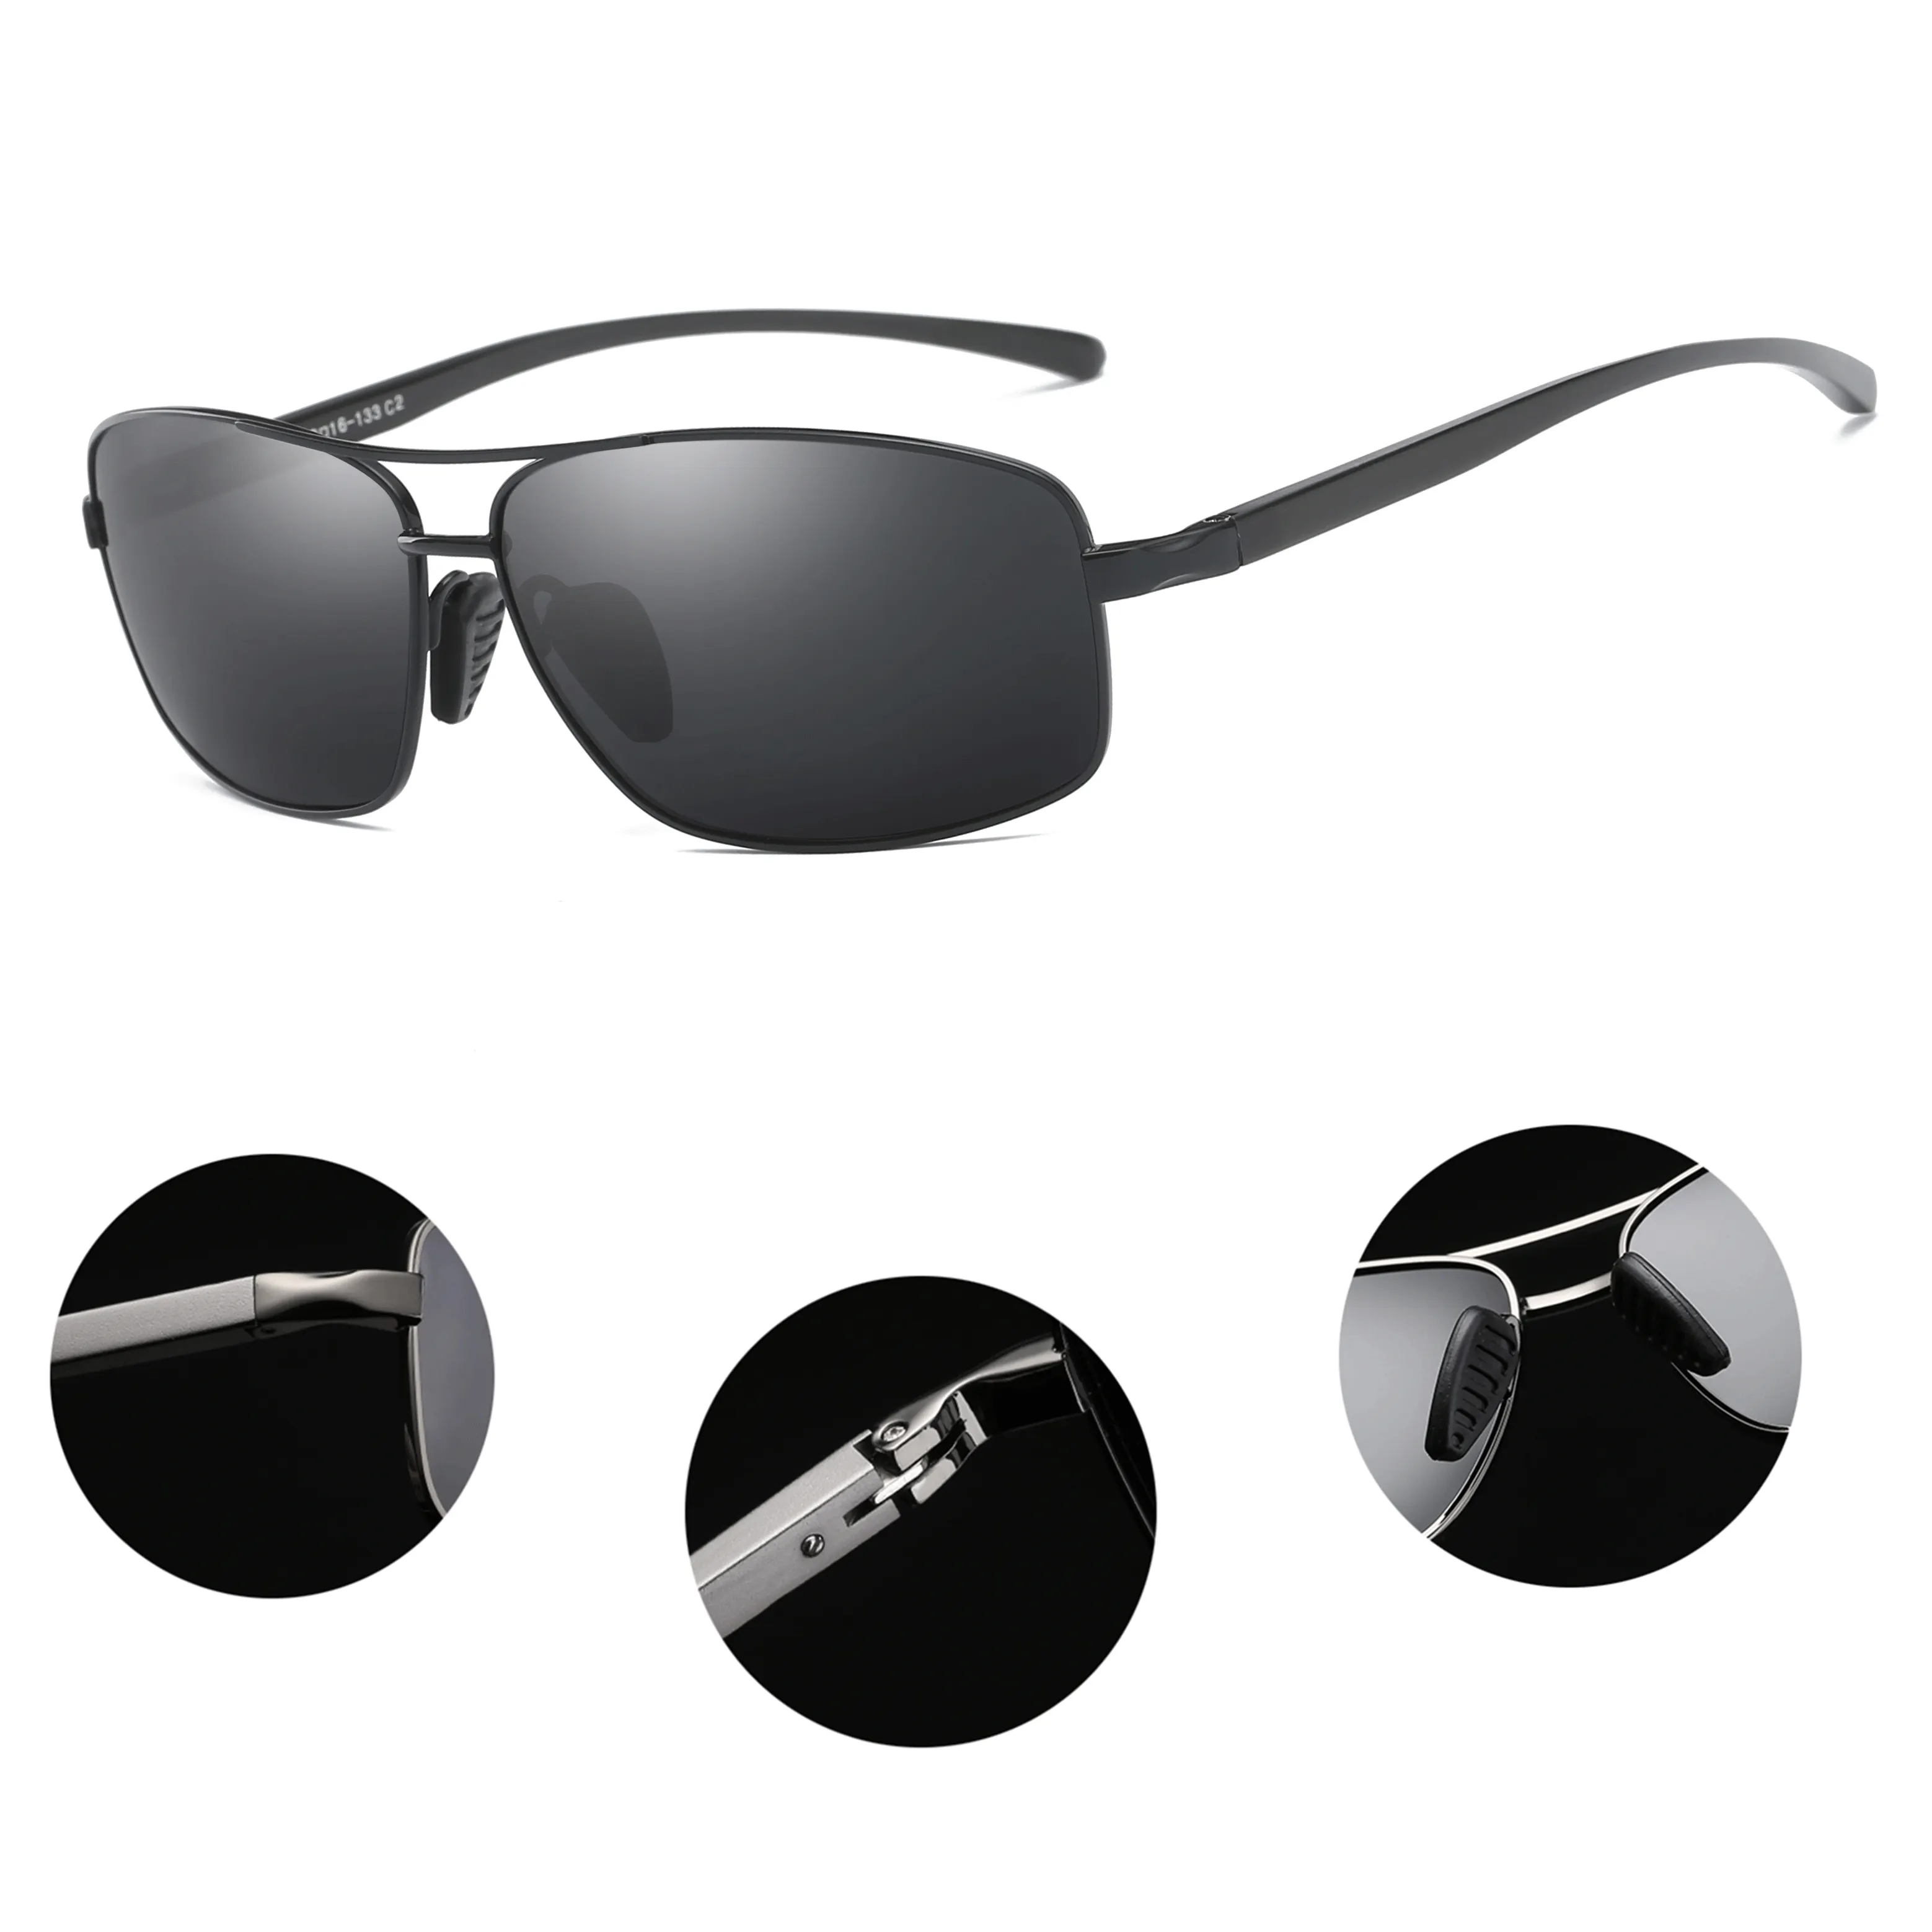 Klasik tasarım alüminyum kare çerçeve TAC UV Ray Lens moda erkek güneş gözlüğü karşı polarize